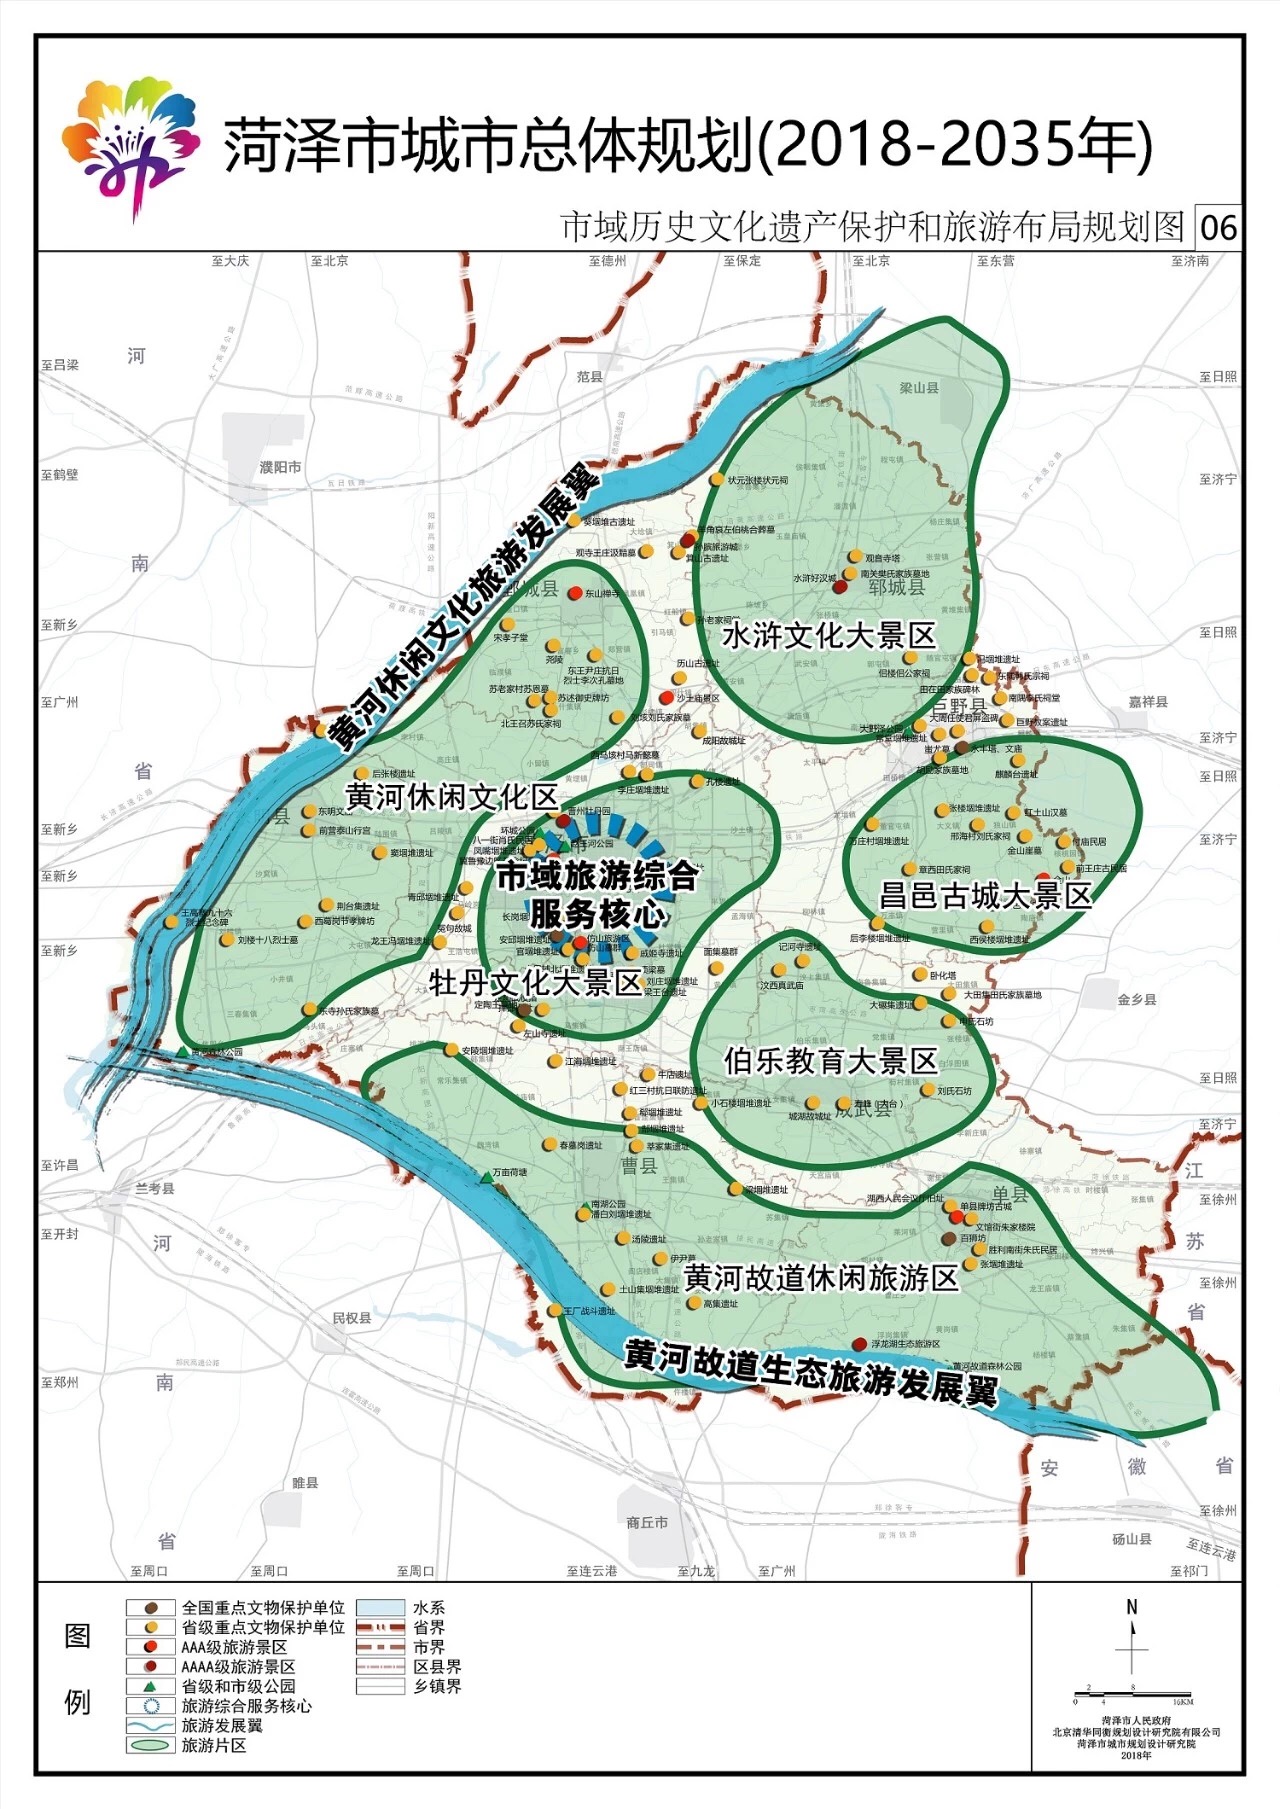 重磅!《菏泽市城市总体规划(2018-2035年)》公示图片